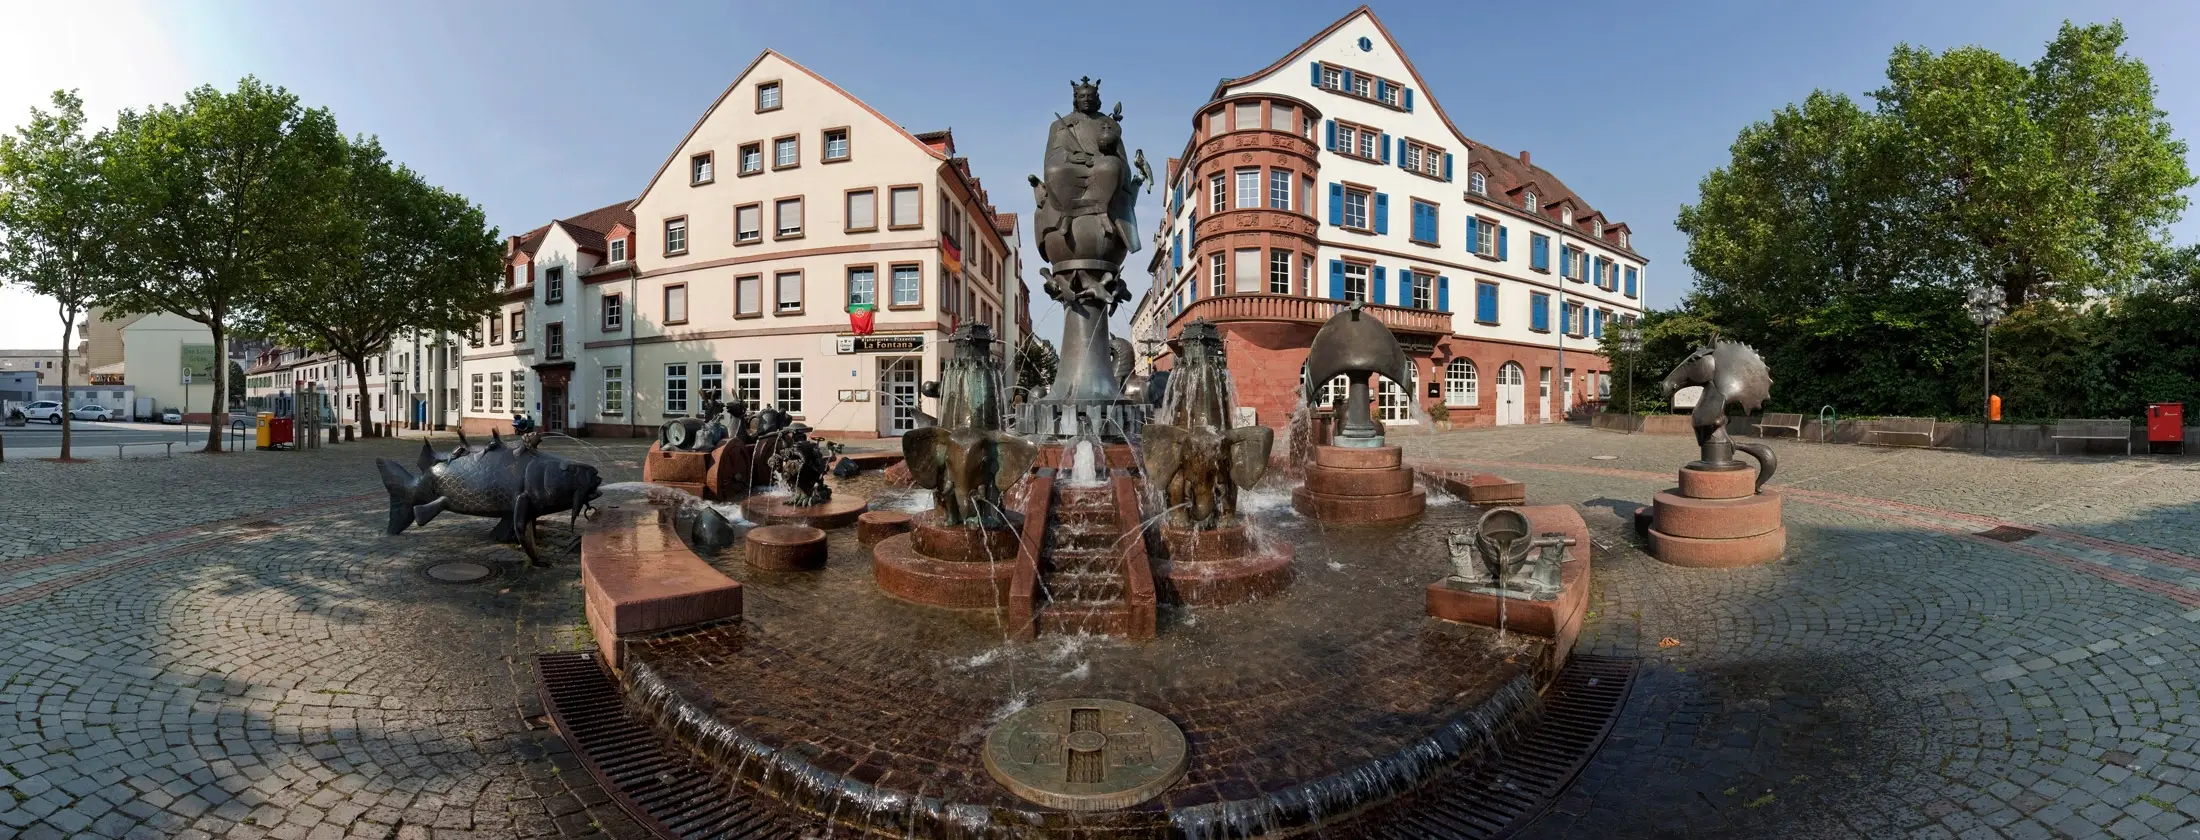 Der Kaiserbrunnen am Mainzer Tor in Kaiserslautern, im Hintergrund die Immobilien Mainzer Tor / Steinstraße